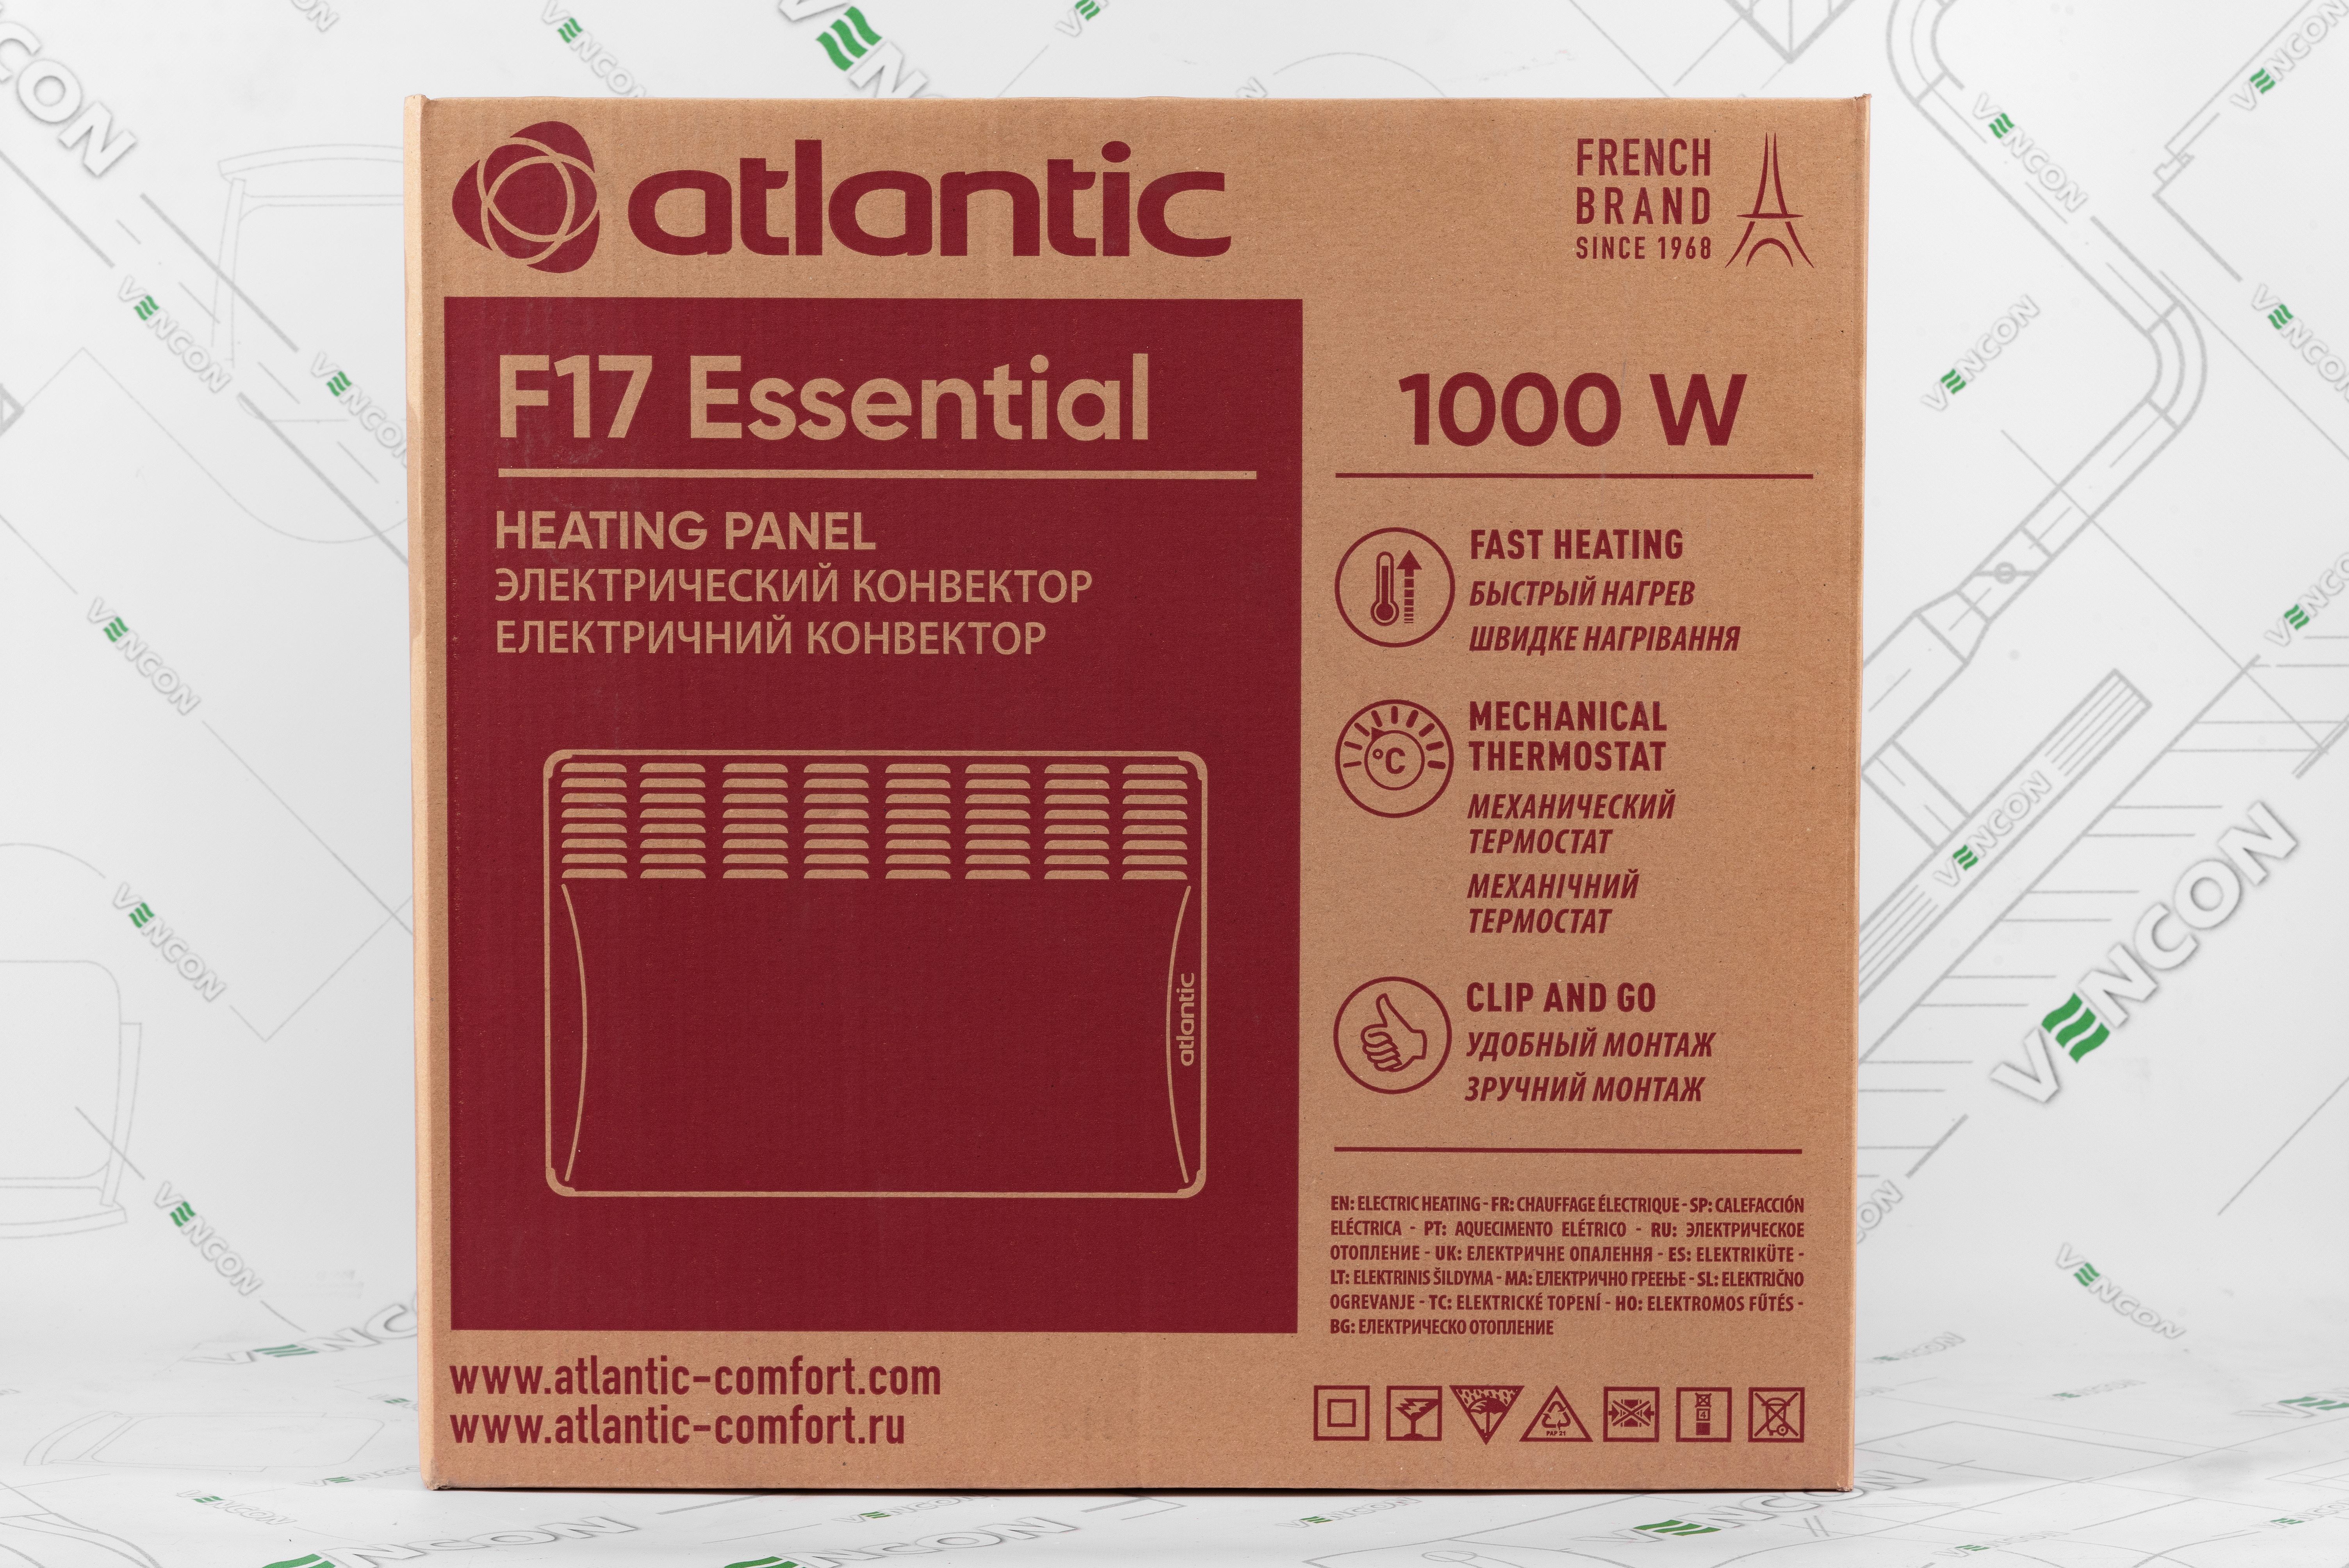 Электрический конвектор Atlantic F17 Essential CMG BL-meca 1000 обзор - фото 11